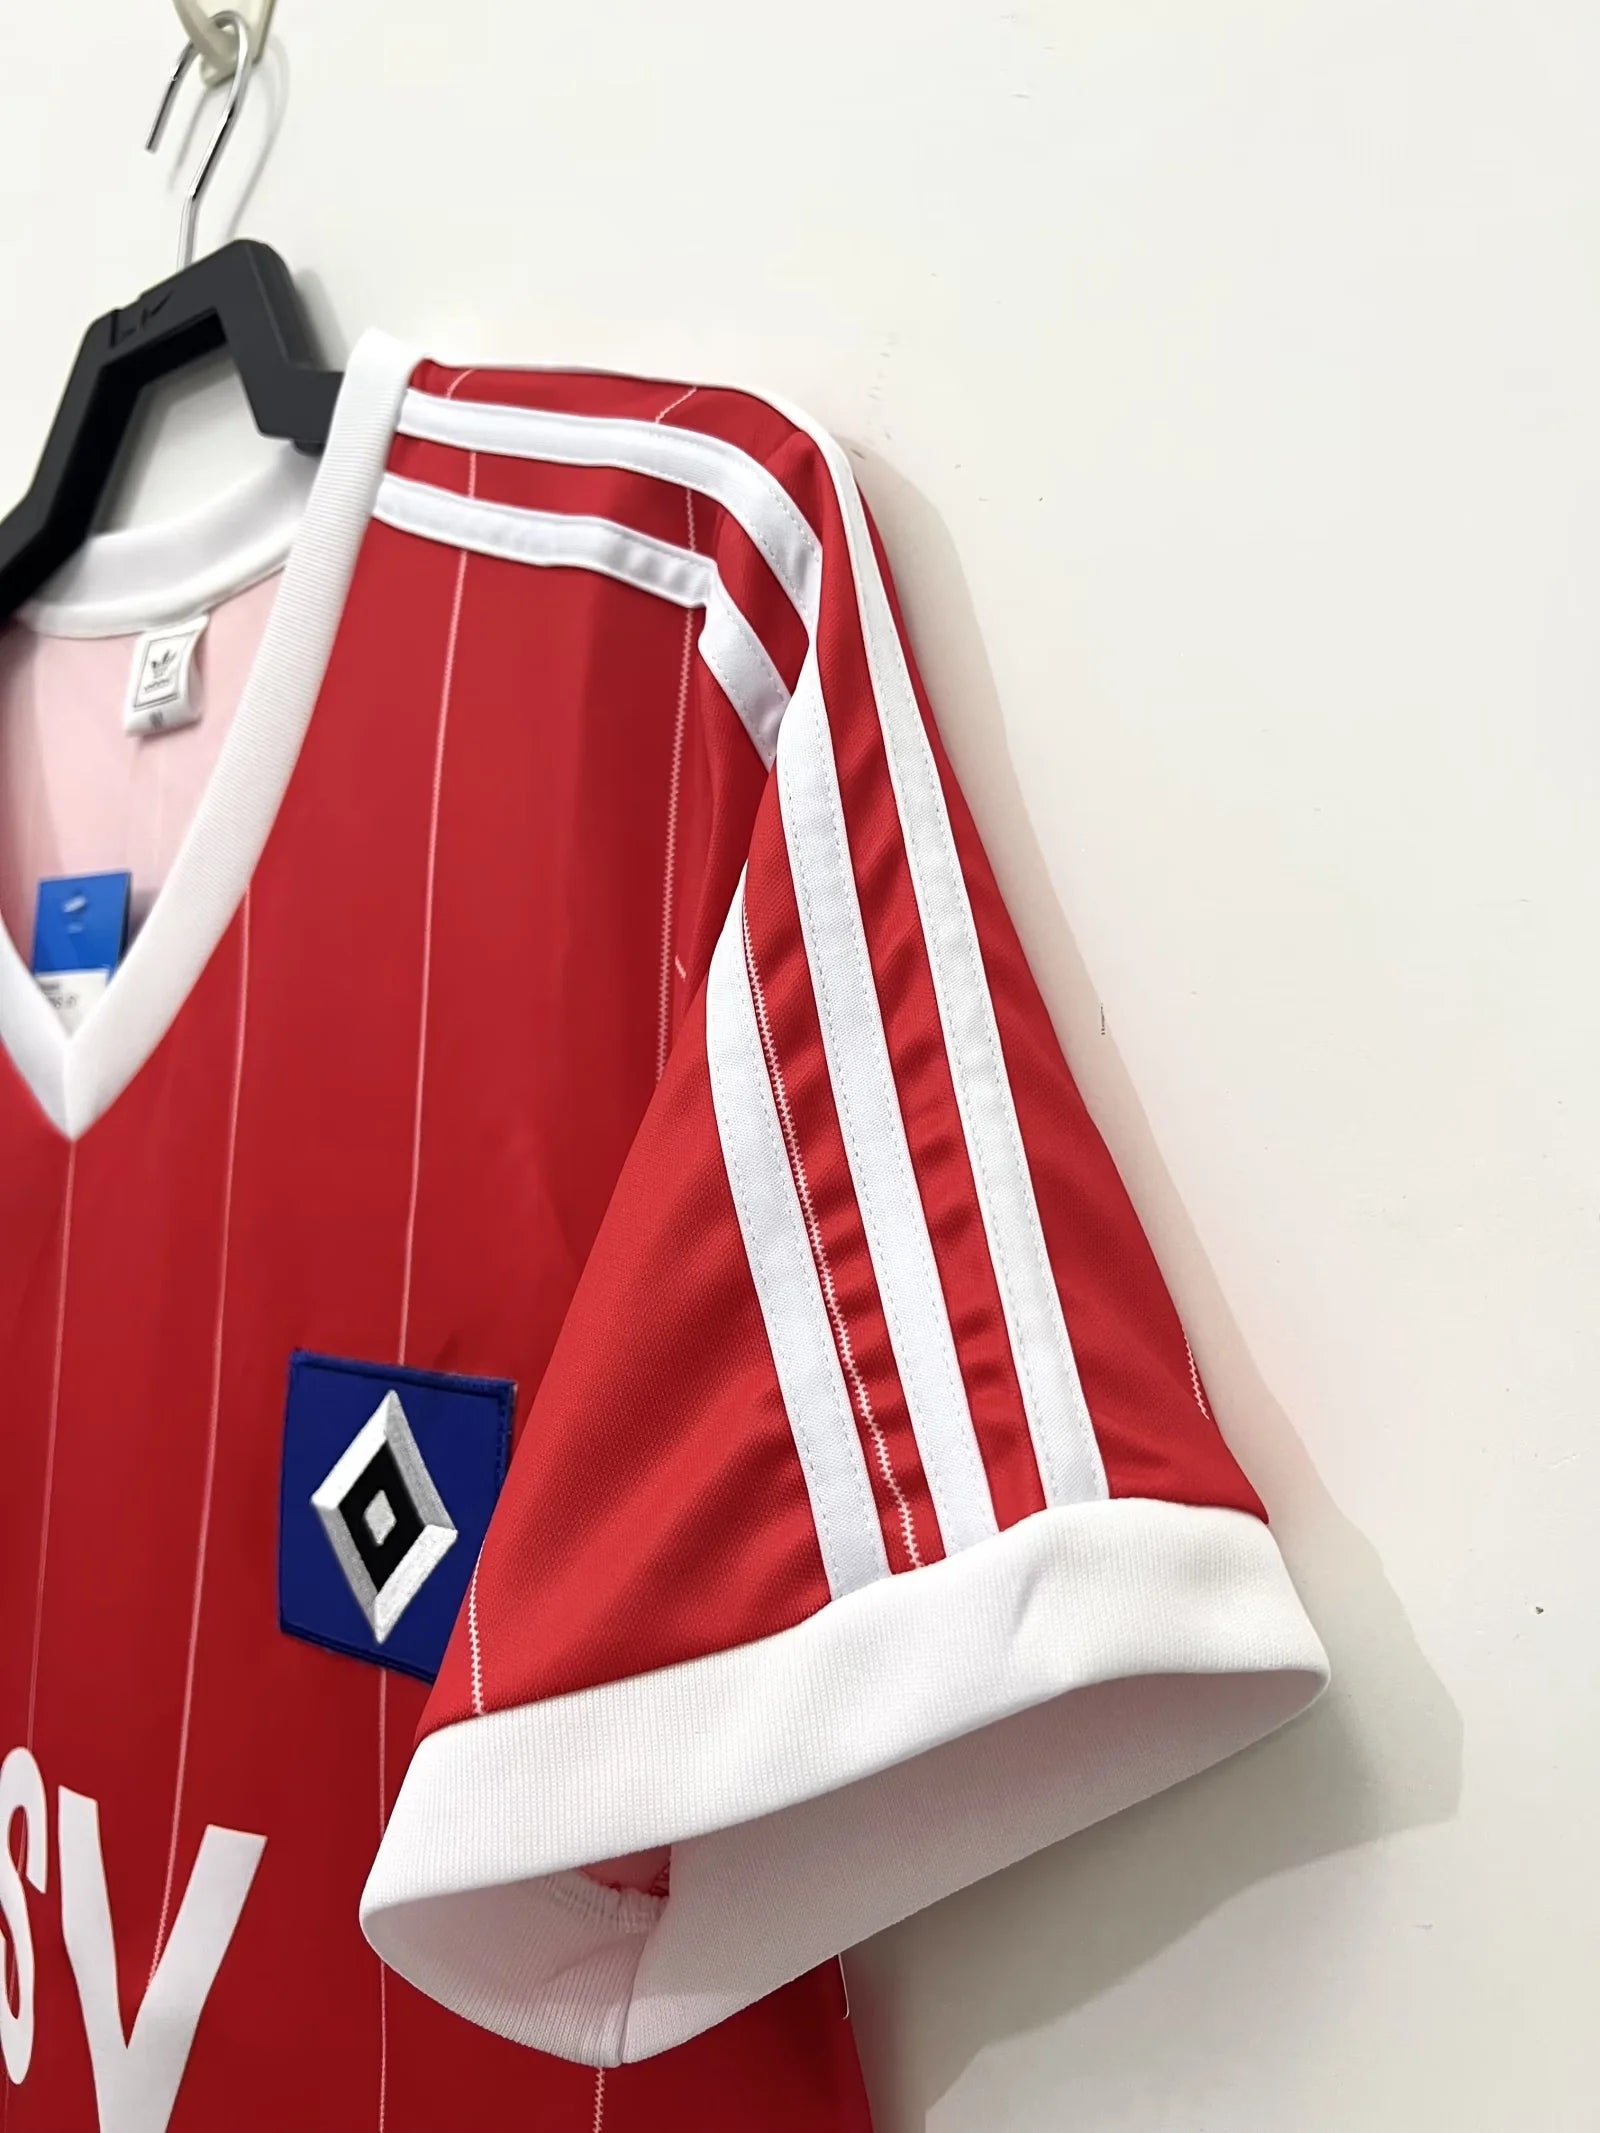 HSV 1982/83 Champions League Kit